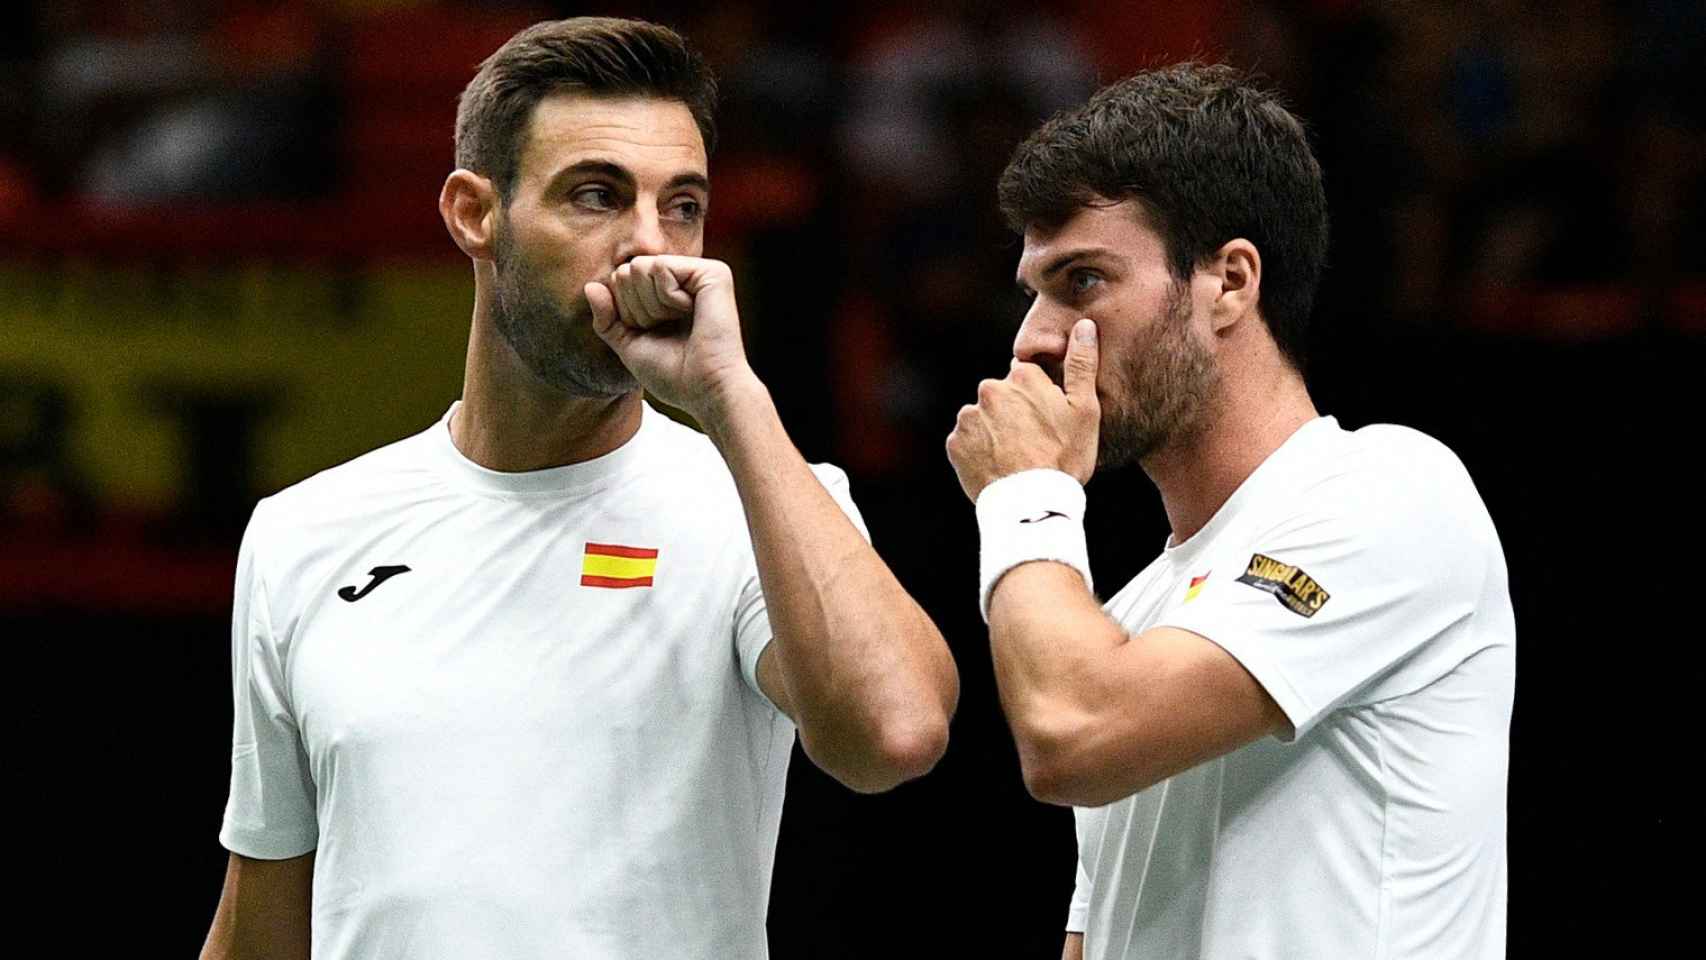 Granollers y Martínez vs Pospisil y Aliassime, Copa Davis | Resultados y estadísticas